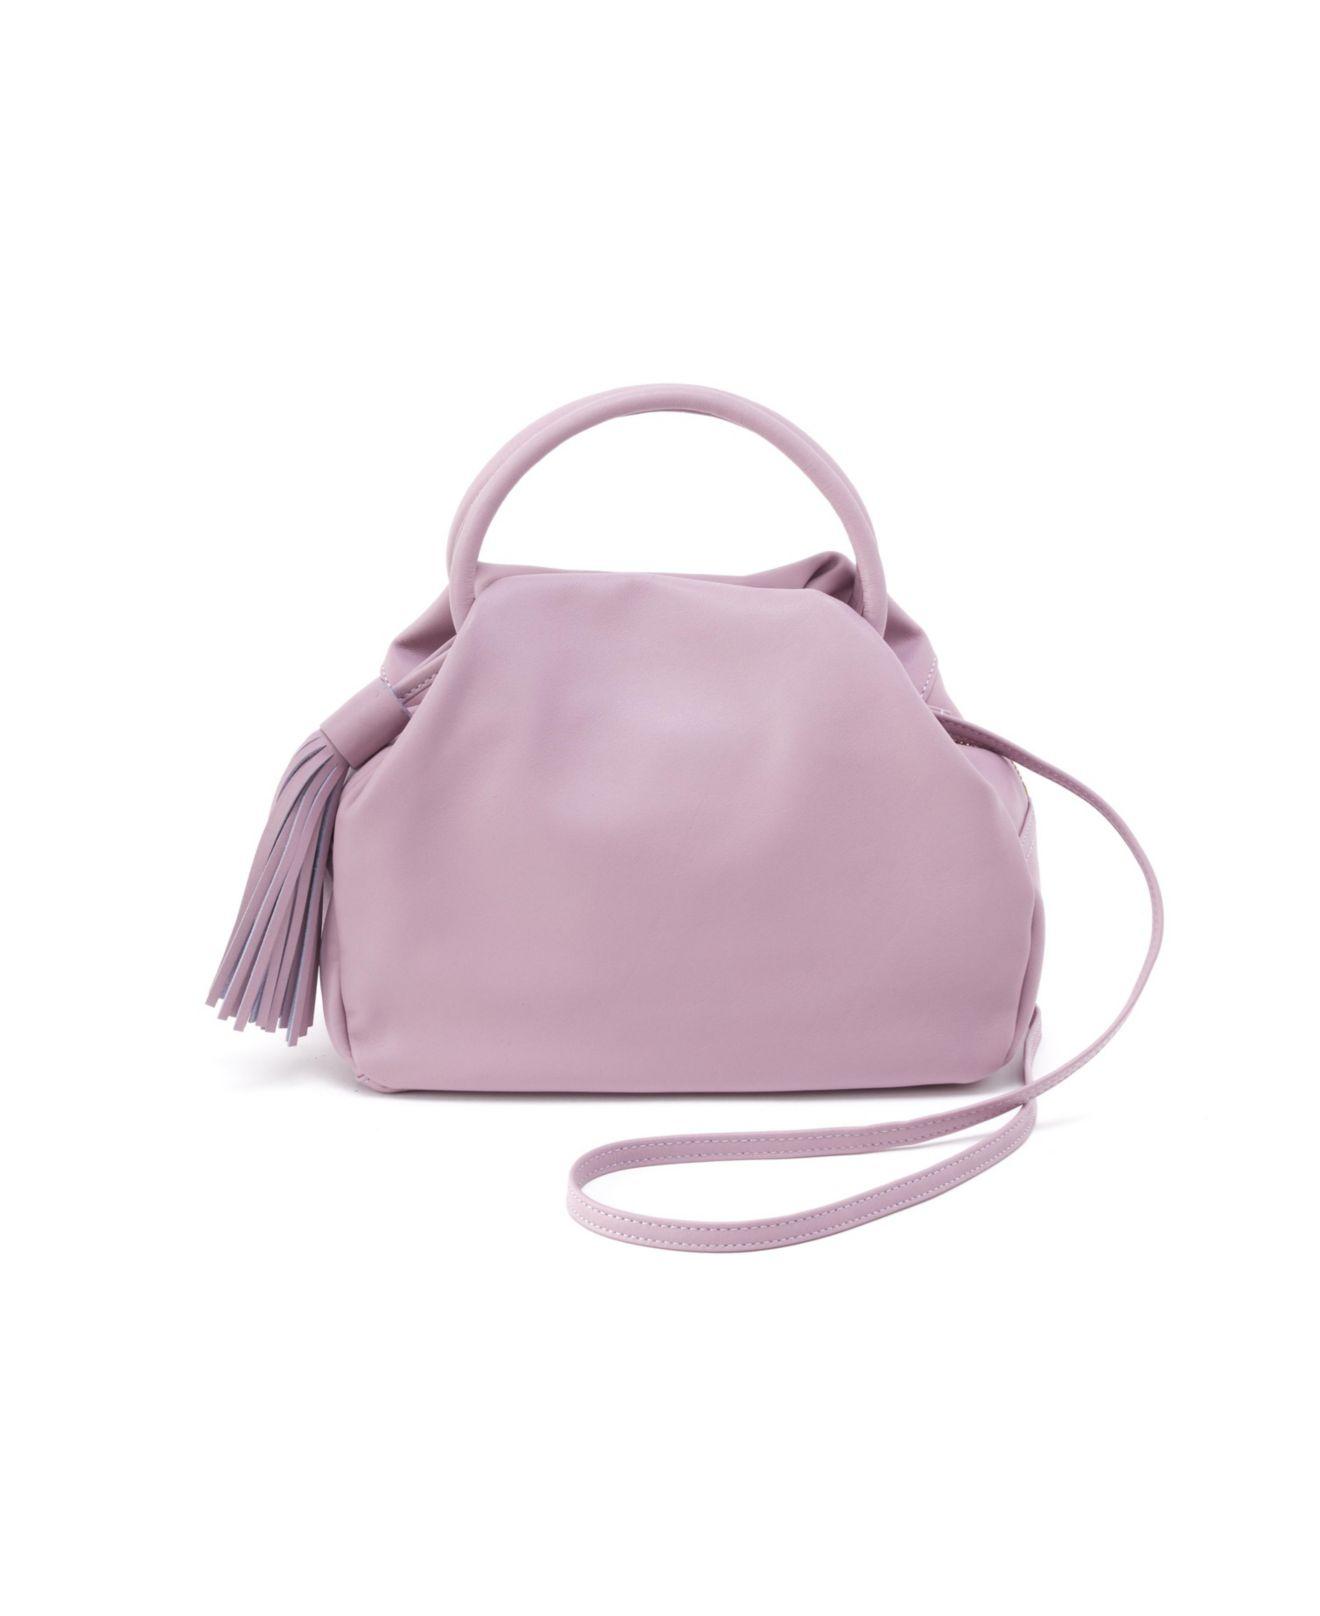 Hobo International Darling Satchel Bag in Purple | Lyst